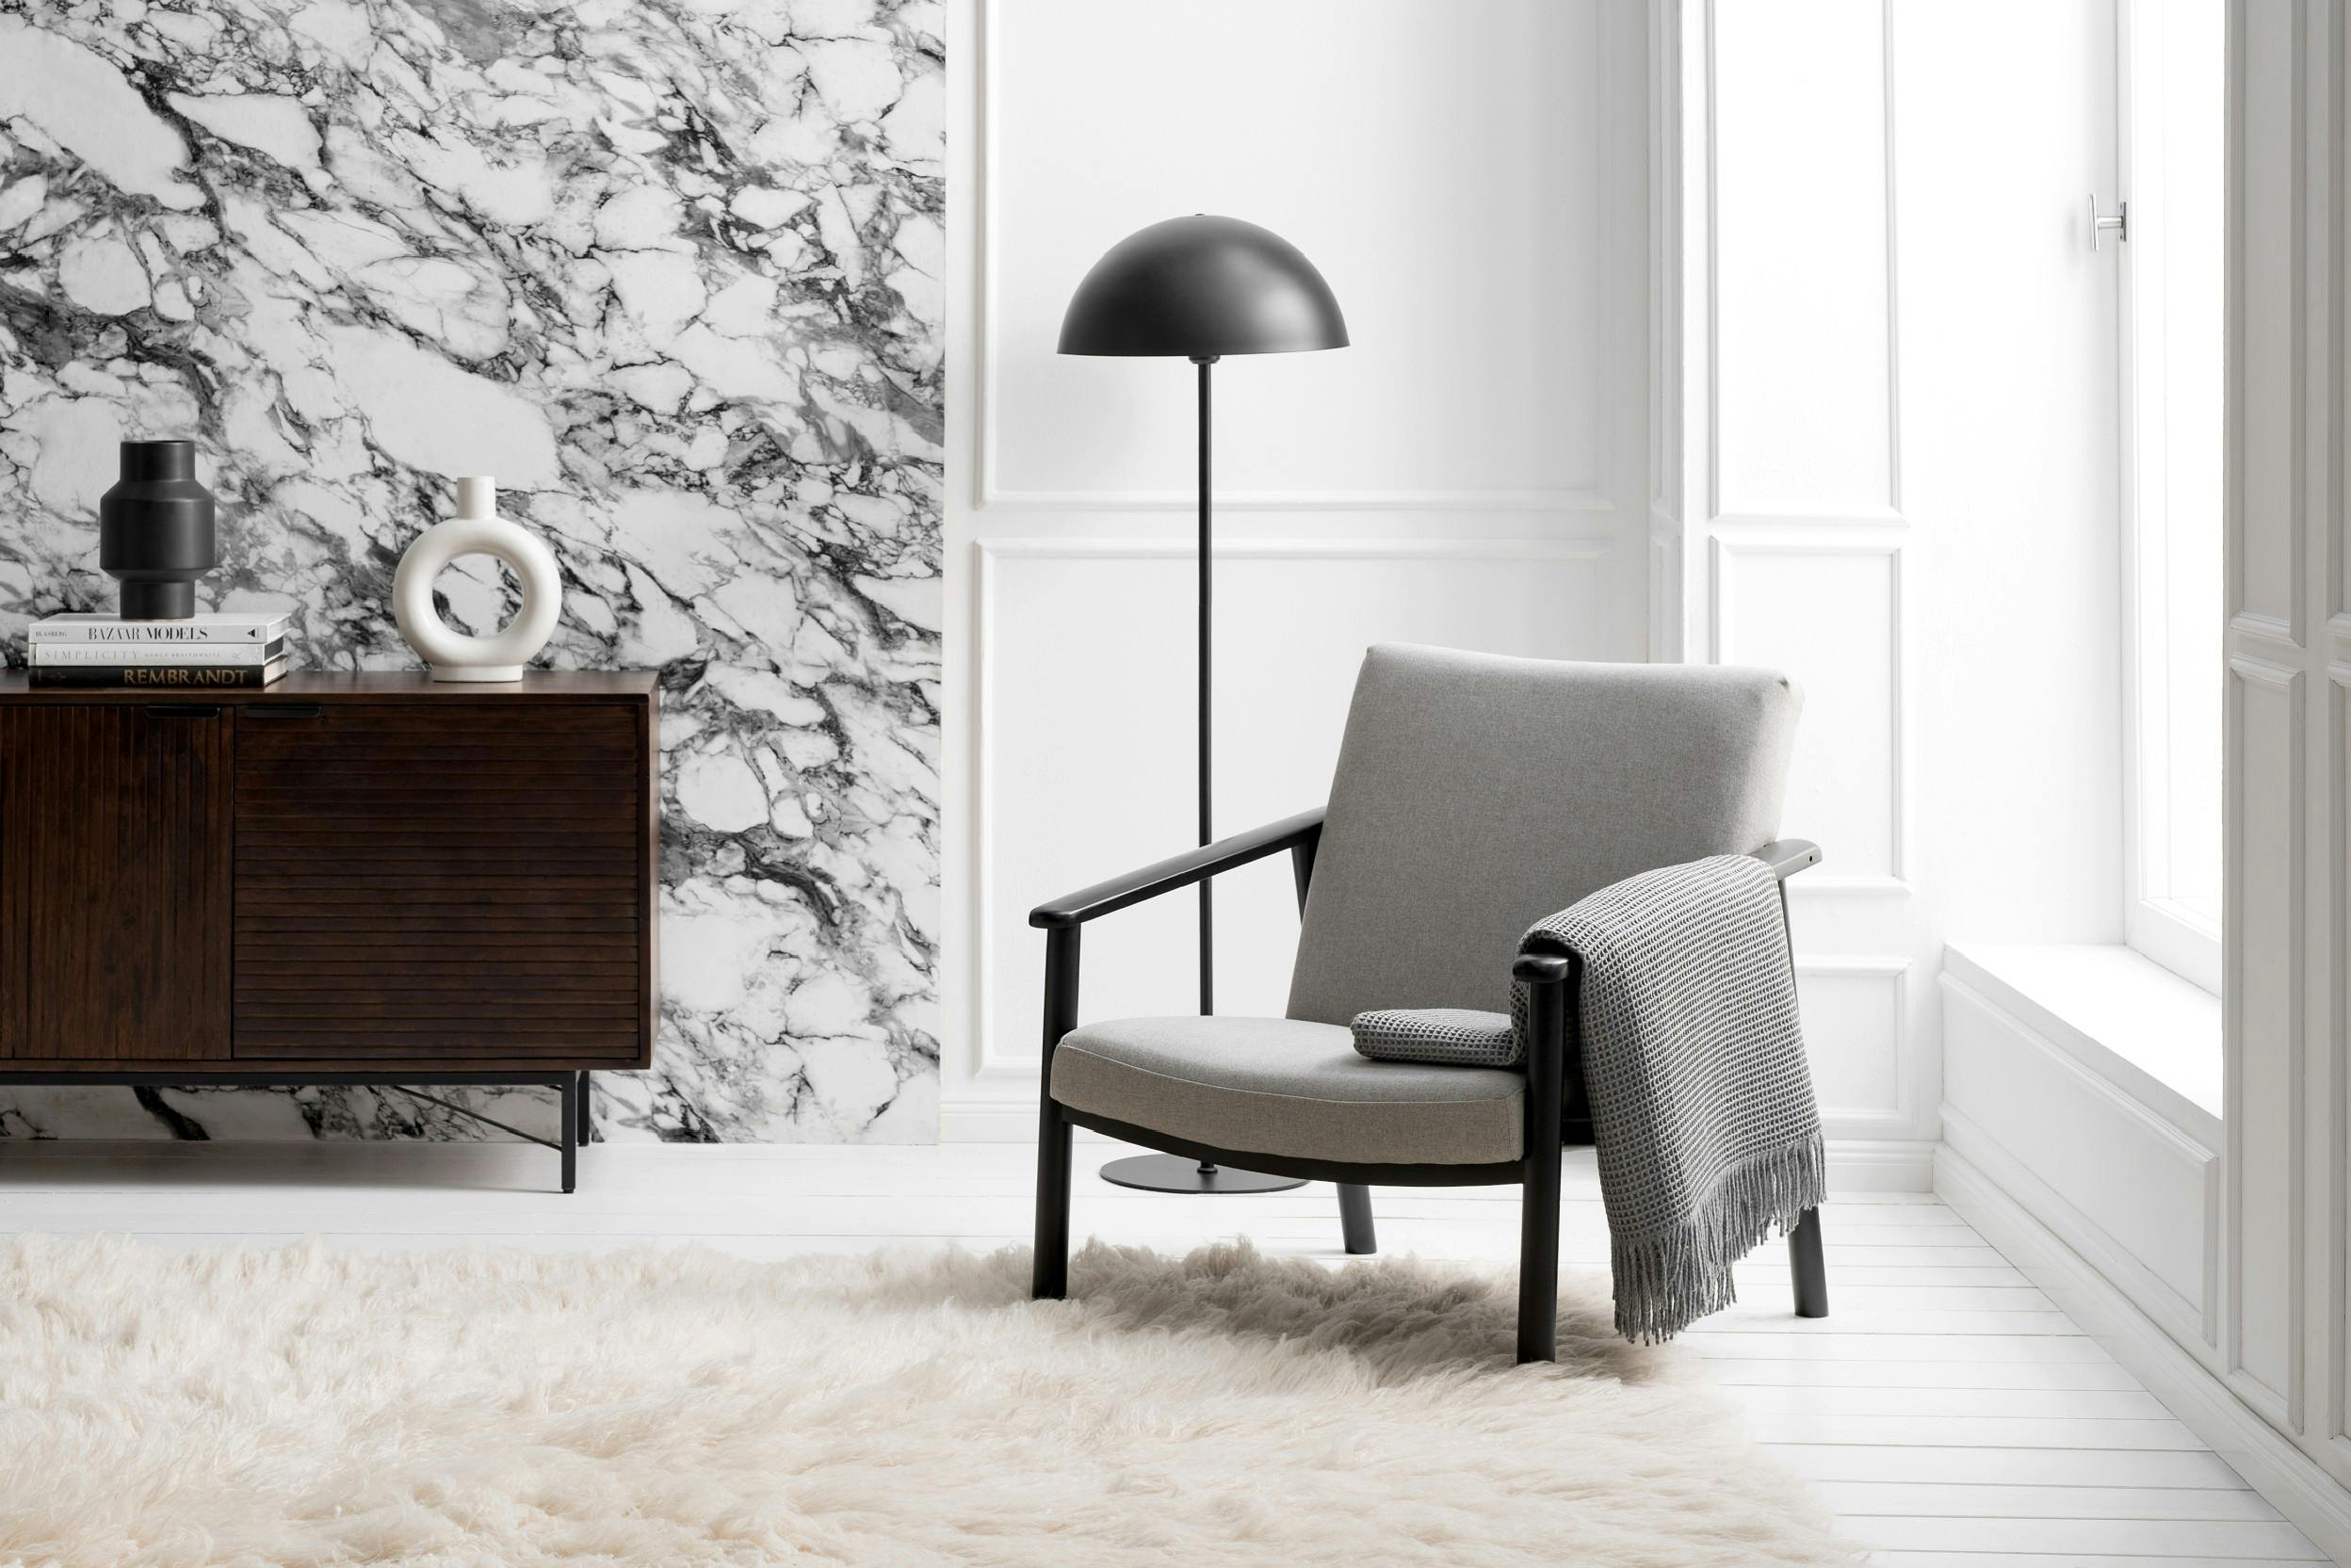 Grauer Sessel mit Stehlampe dahinter in modernem, minimalistischem Design